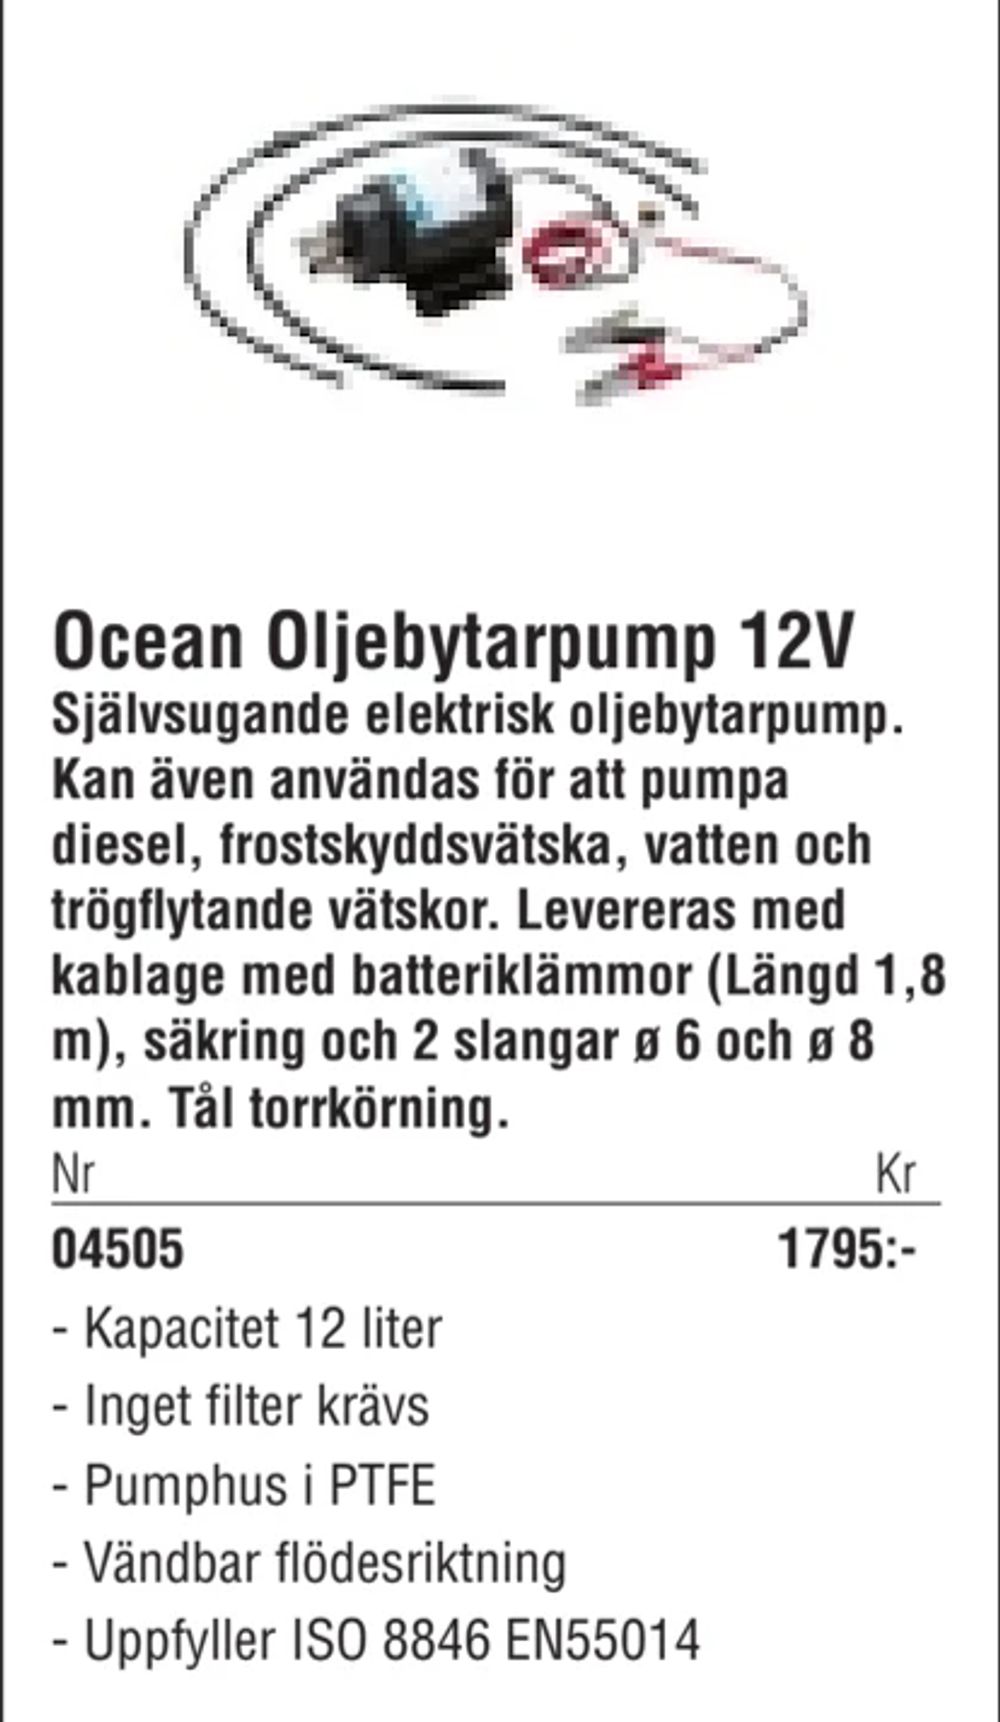 Erbjudanden på Ocean Oljebytarpump 12V från Erlandsons Brygga för 1 795 kr